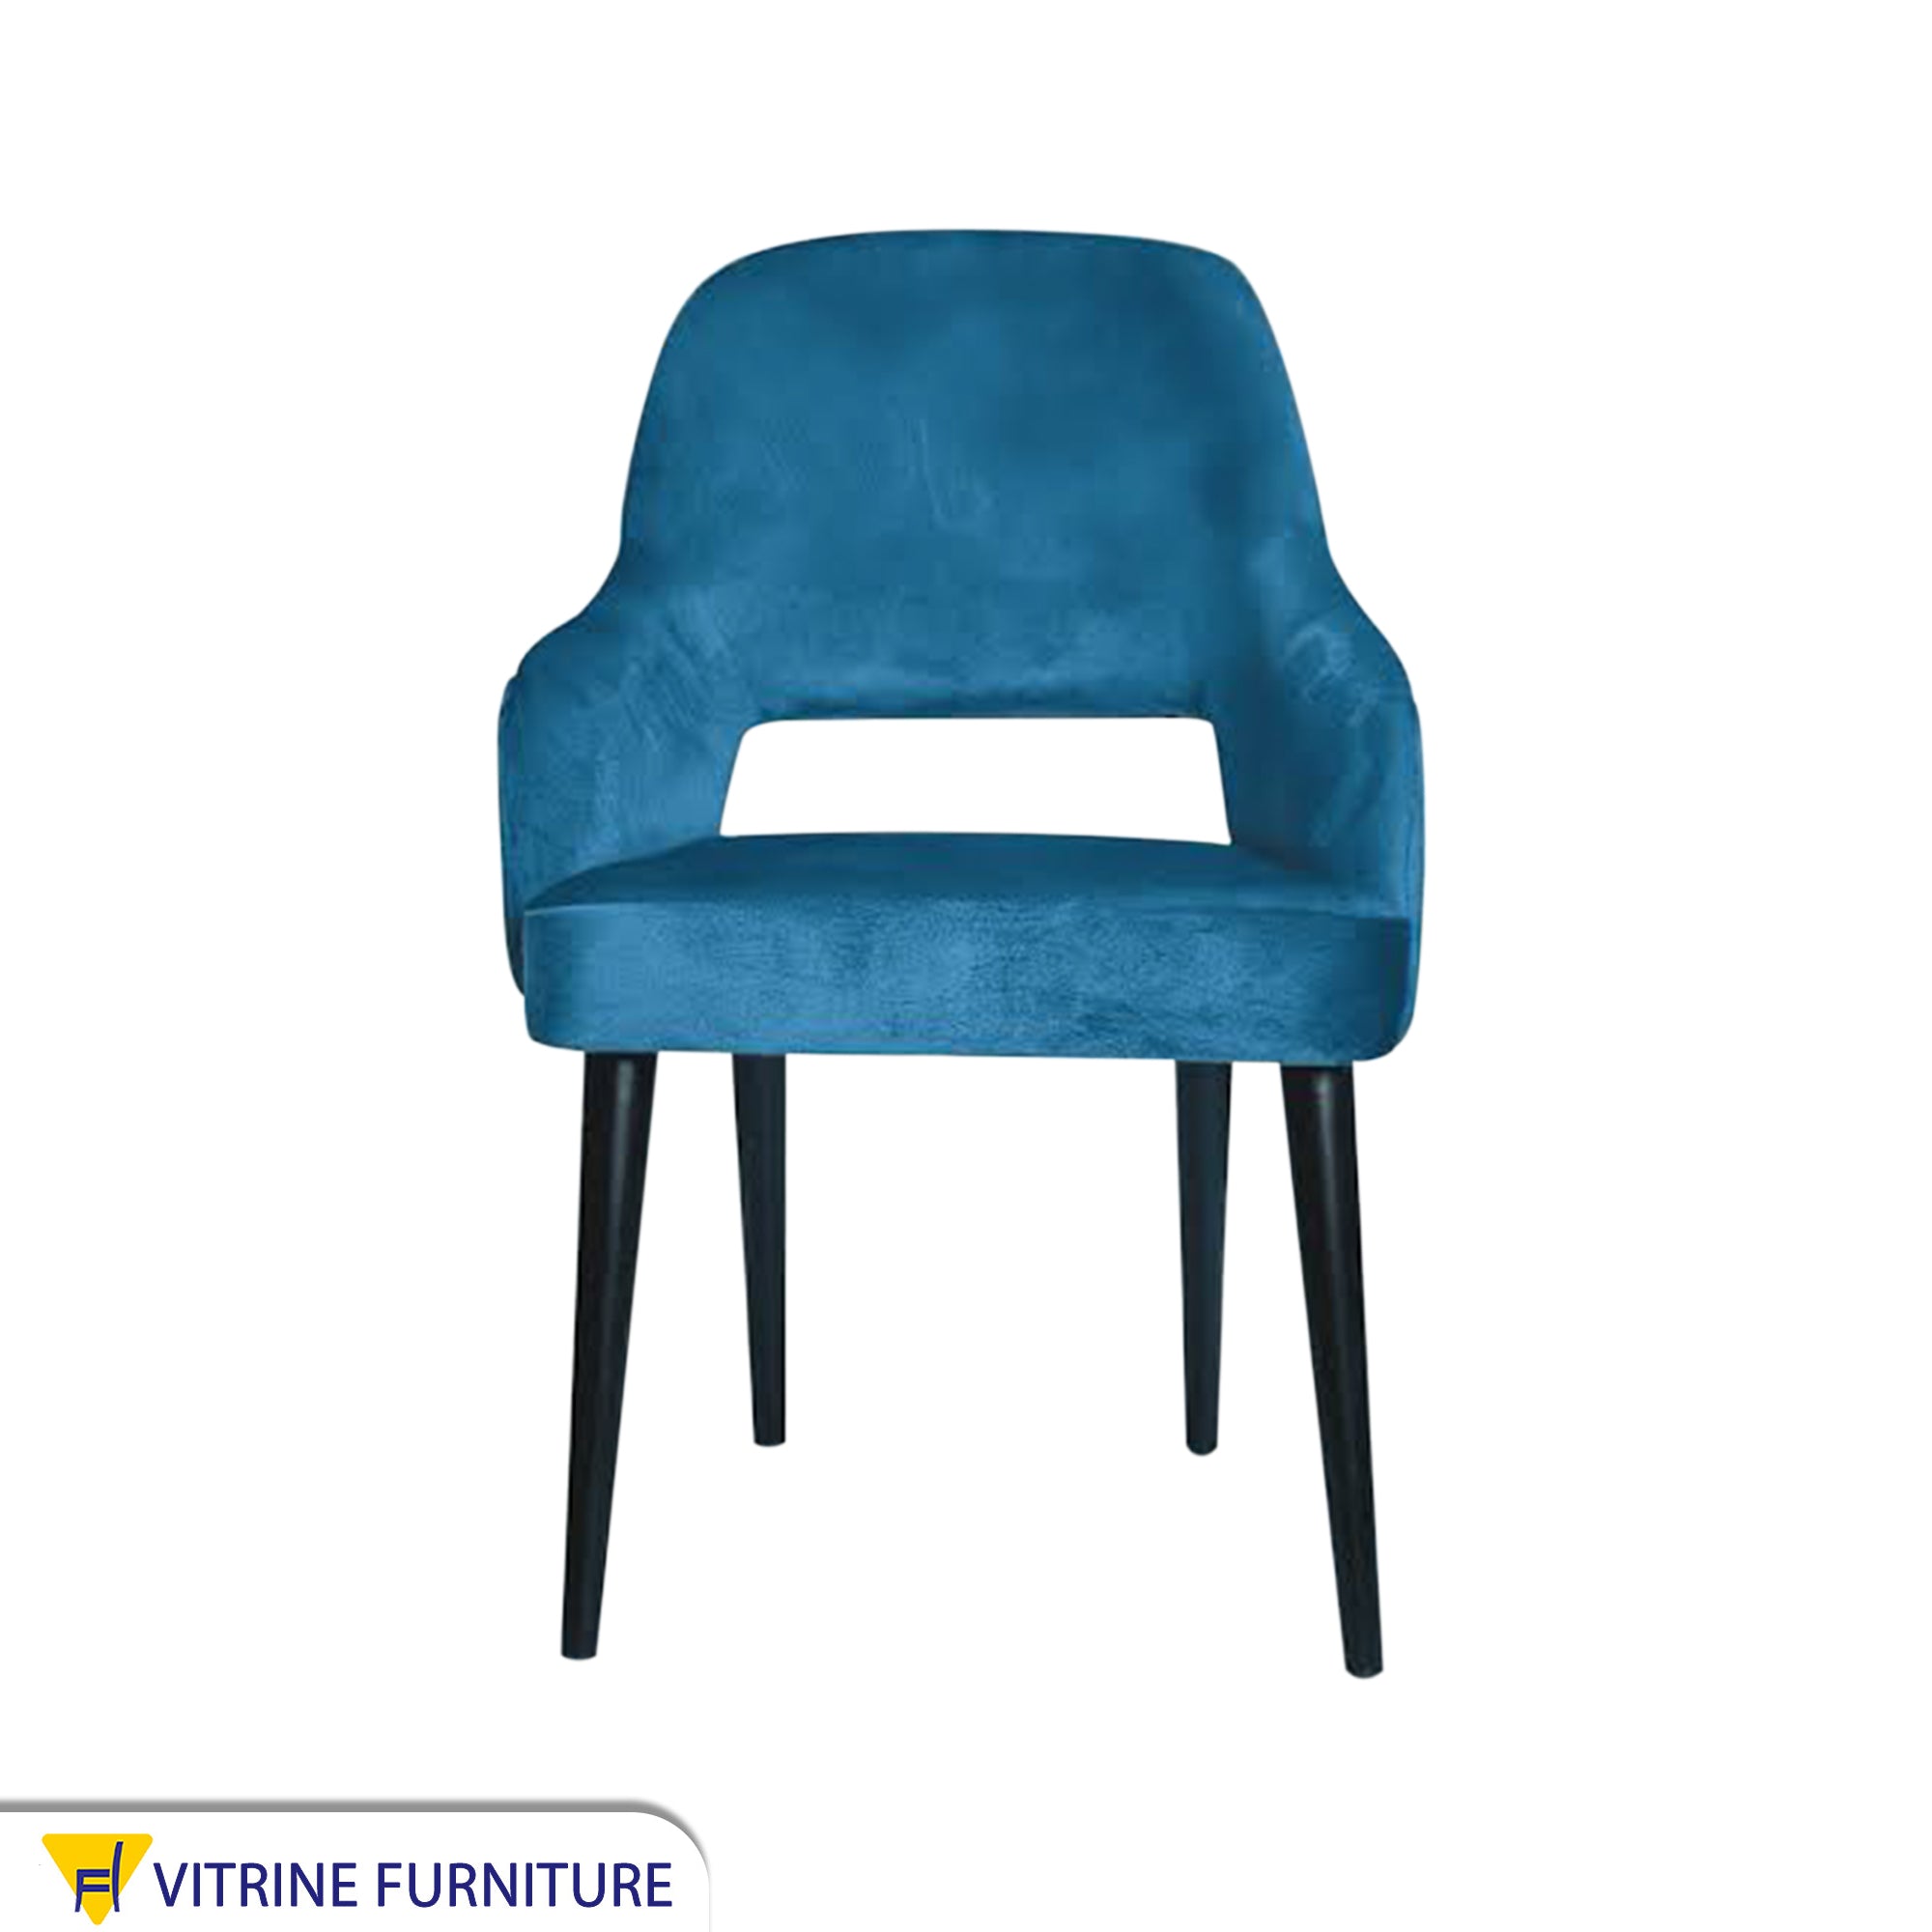 Aqua blue chair